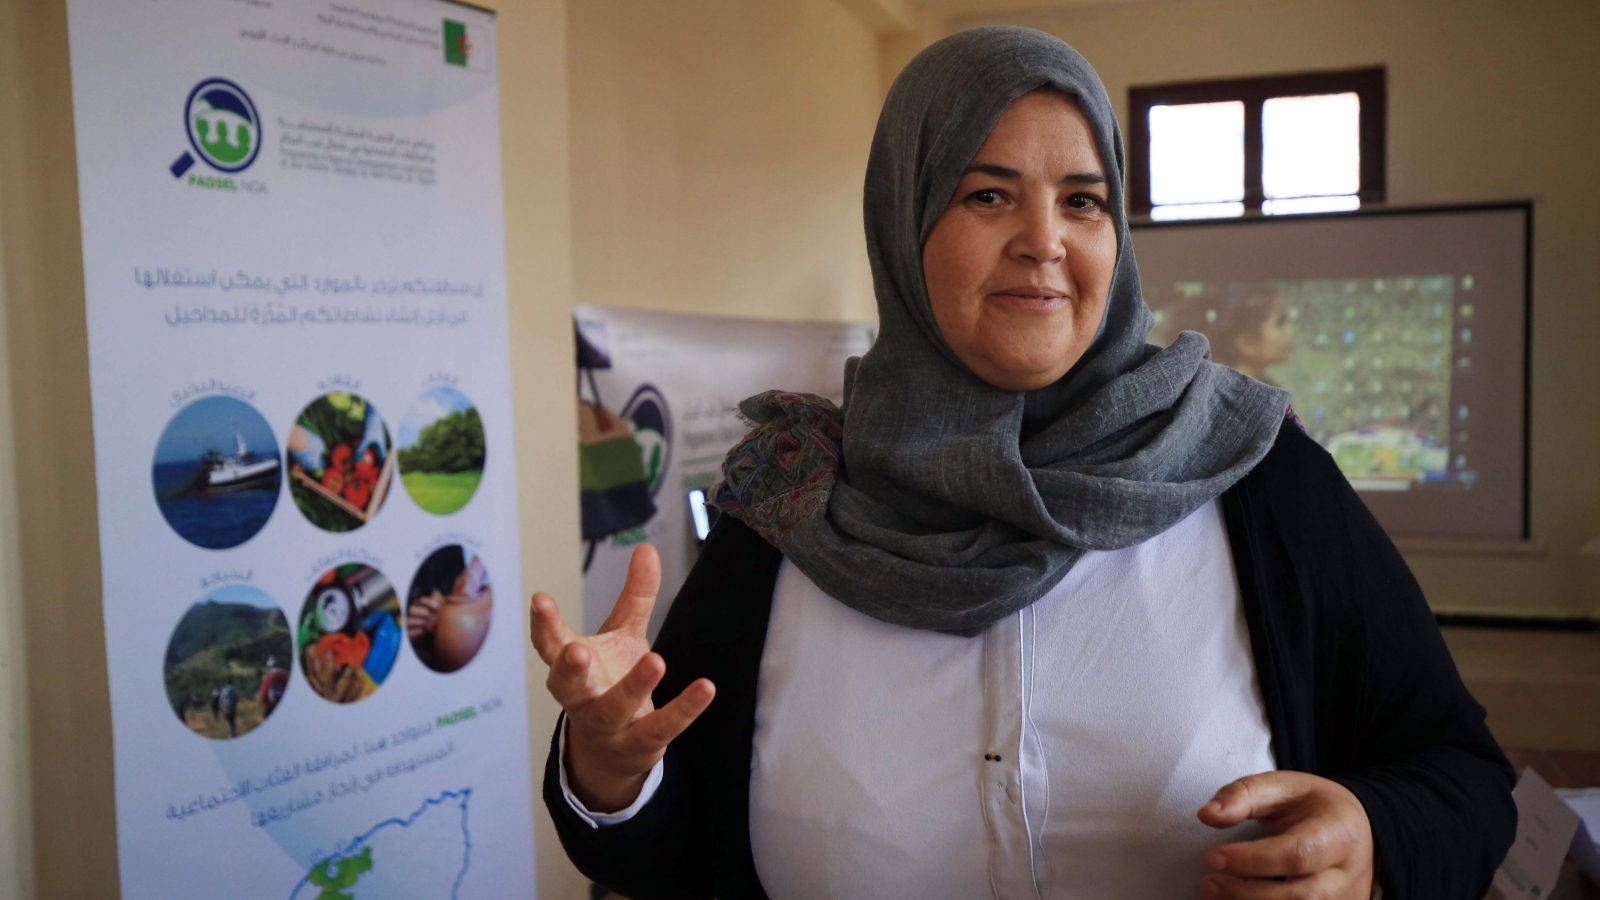 برنامج دعم التنمية المحليّة المستدامة والعمل الاجتماعي في شمال غرب الجزائر: من الاغتيال إلى تمكين المرأة 